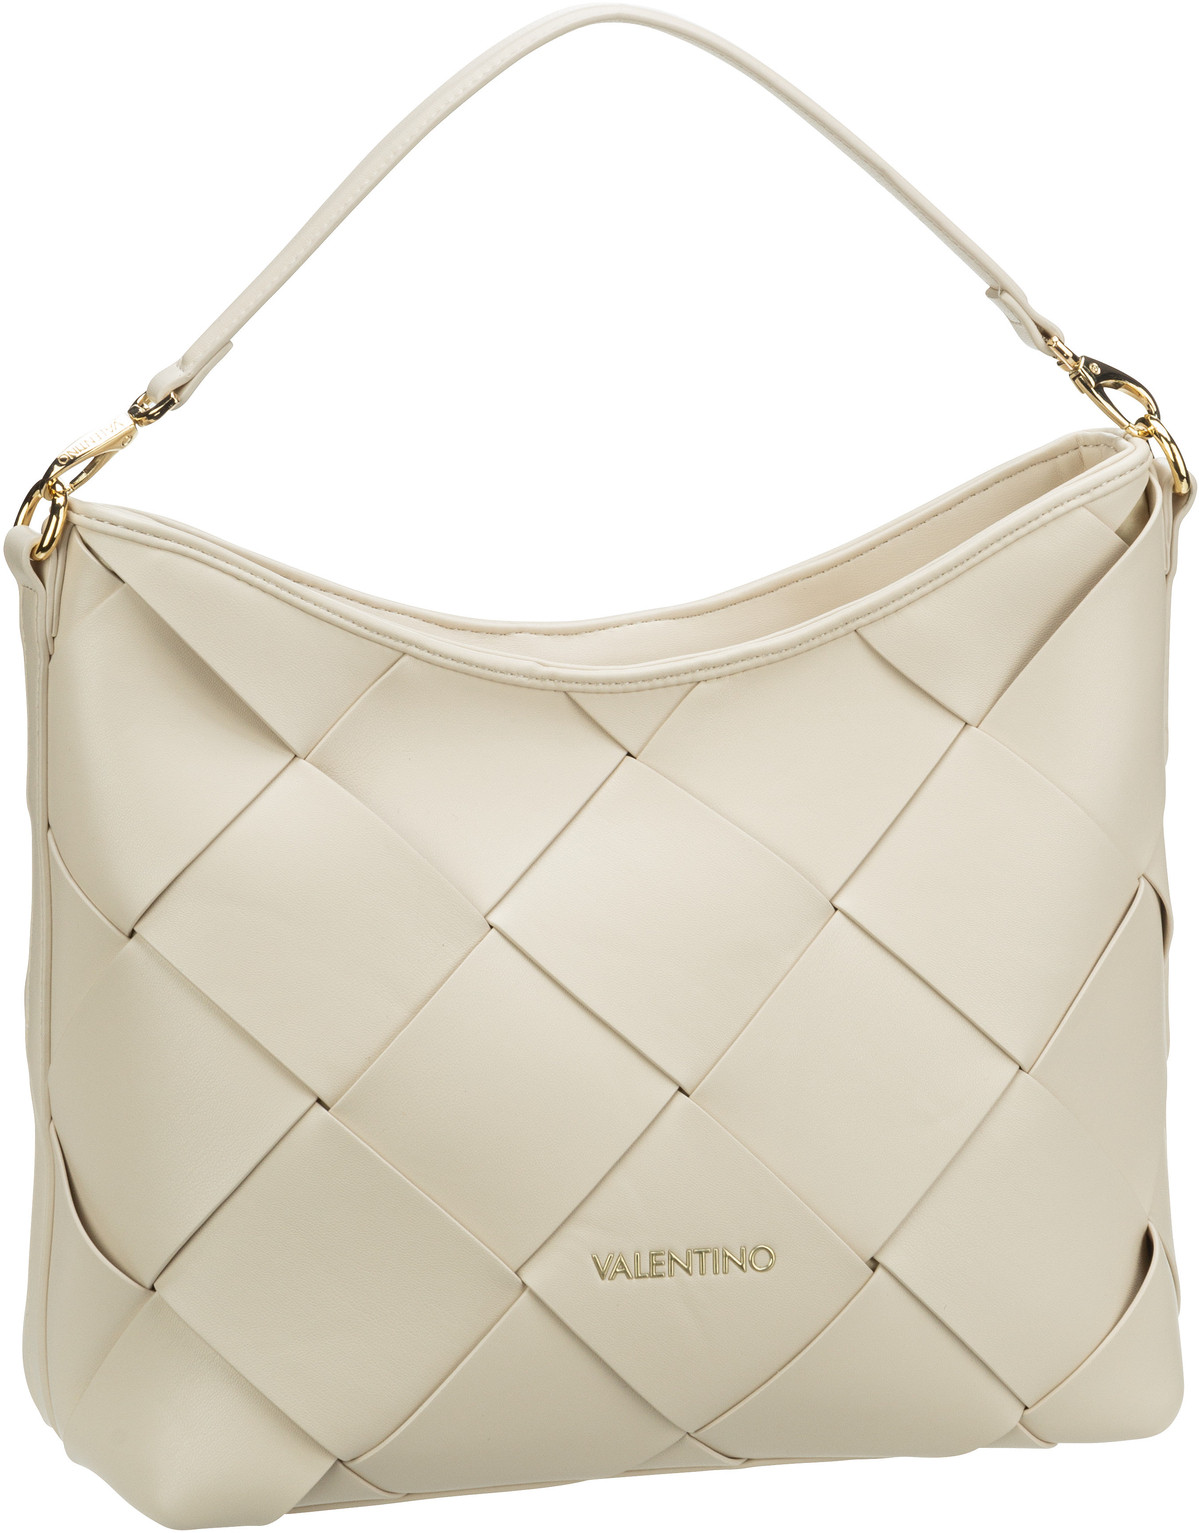 Valentino Ibiza Hobo Bag 505 - Off White